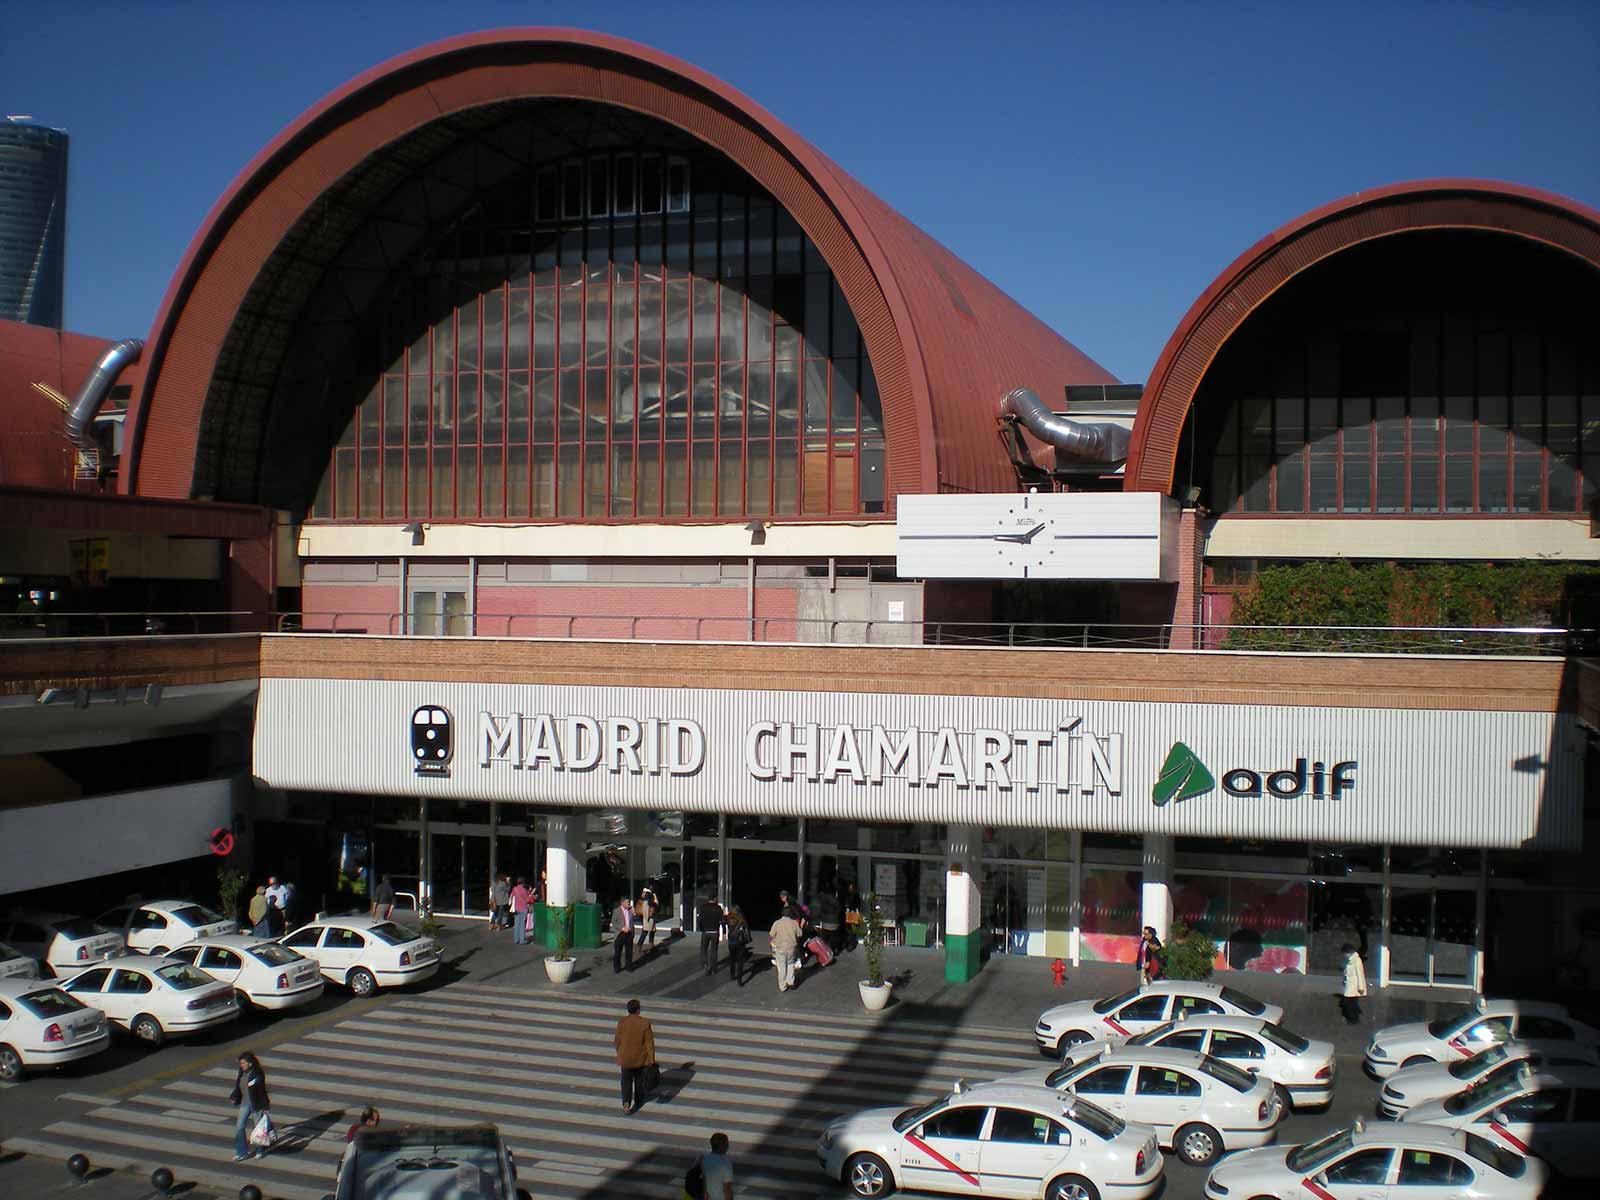 Madrid_chamartin вокзал испания